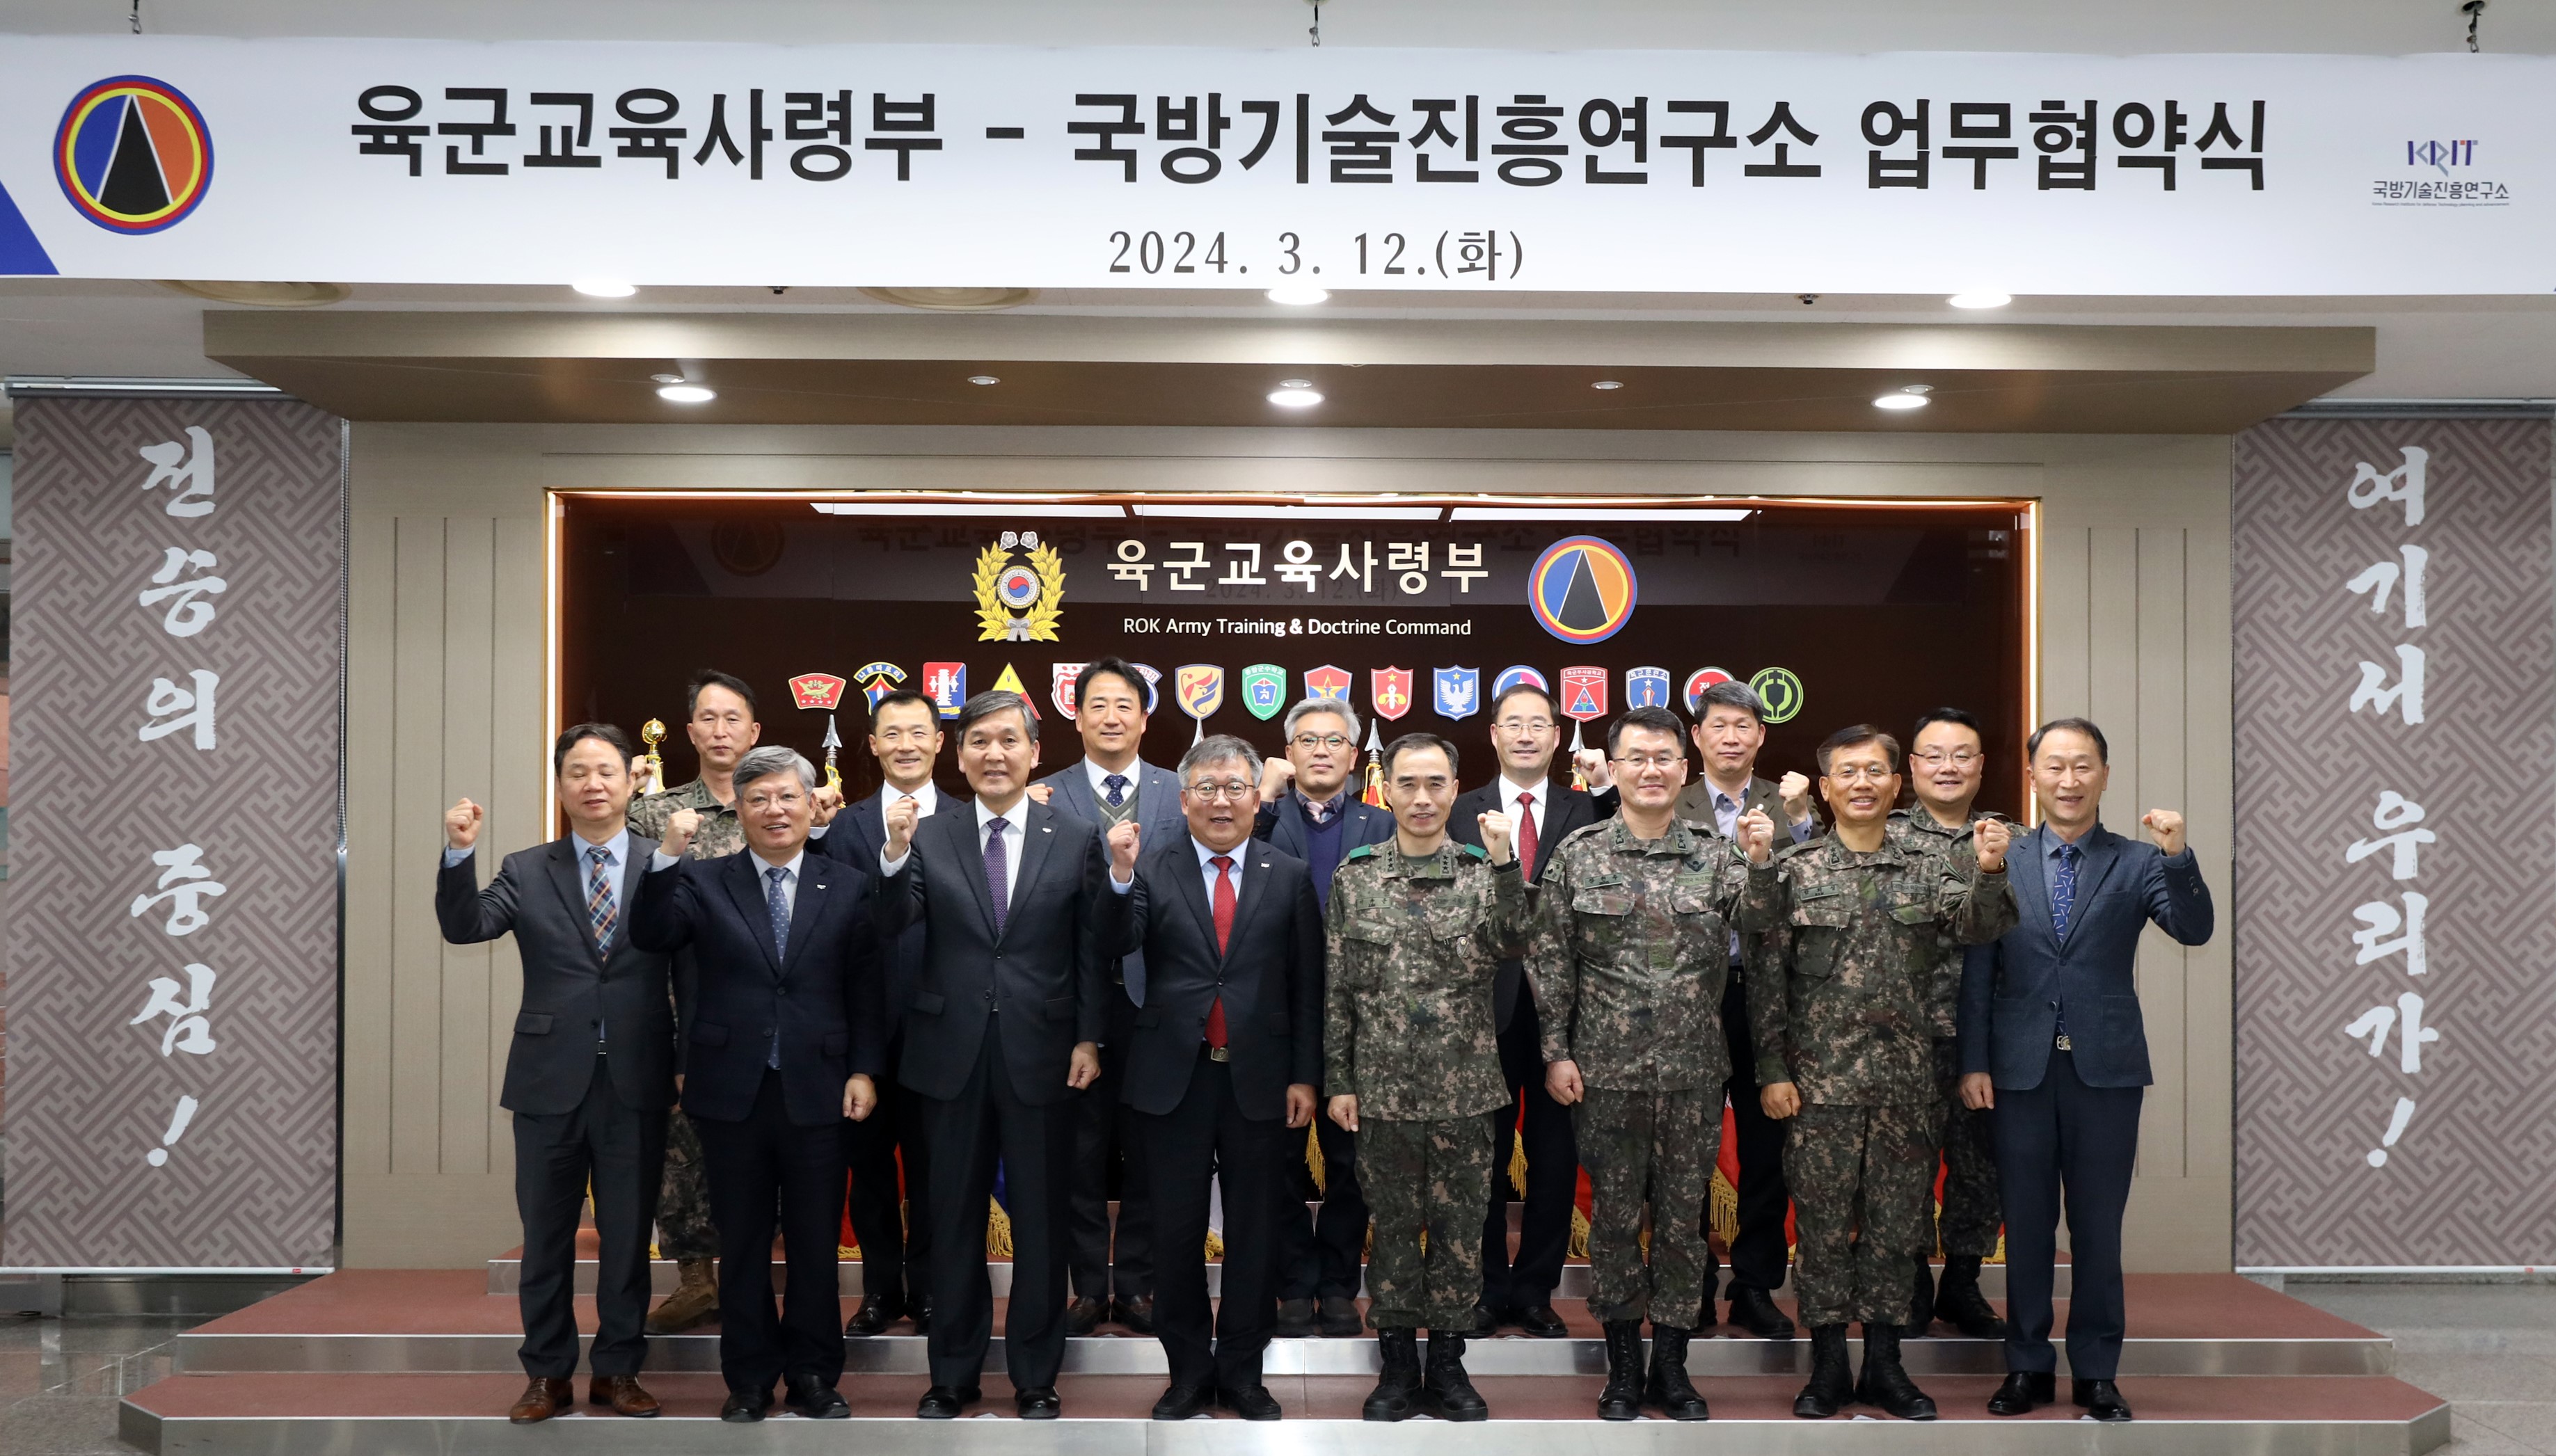 국방기술진흥연구소 - 육군교육사령부 교류협력 강화 업무협약(MOU) 체결